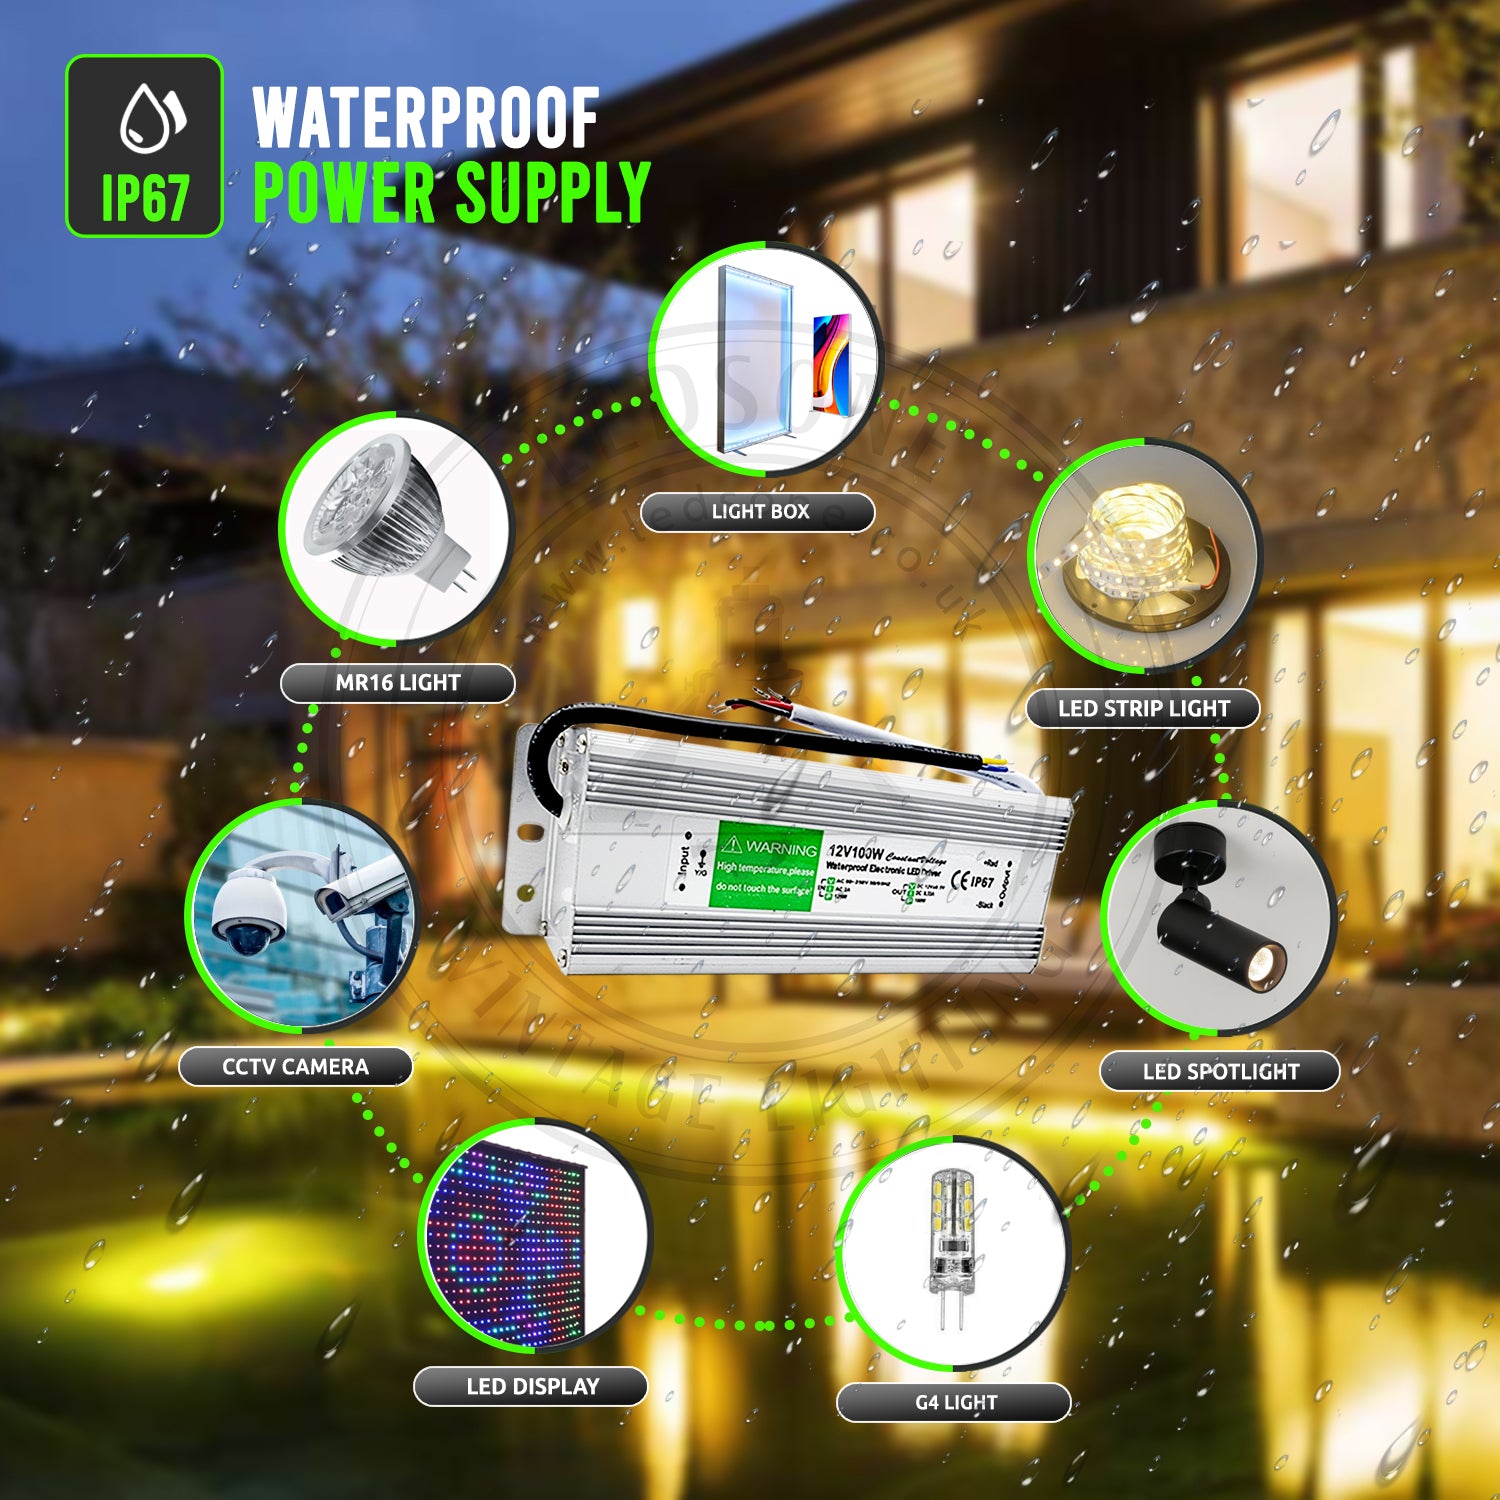 waterproof power supply